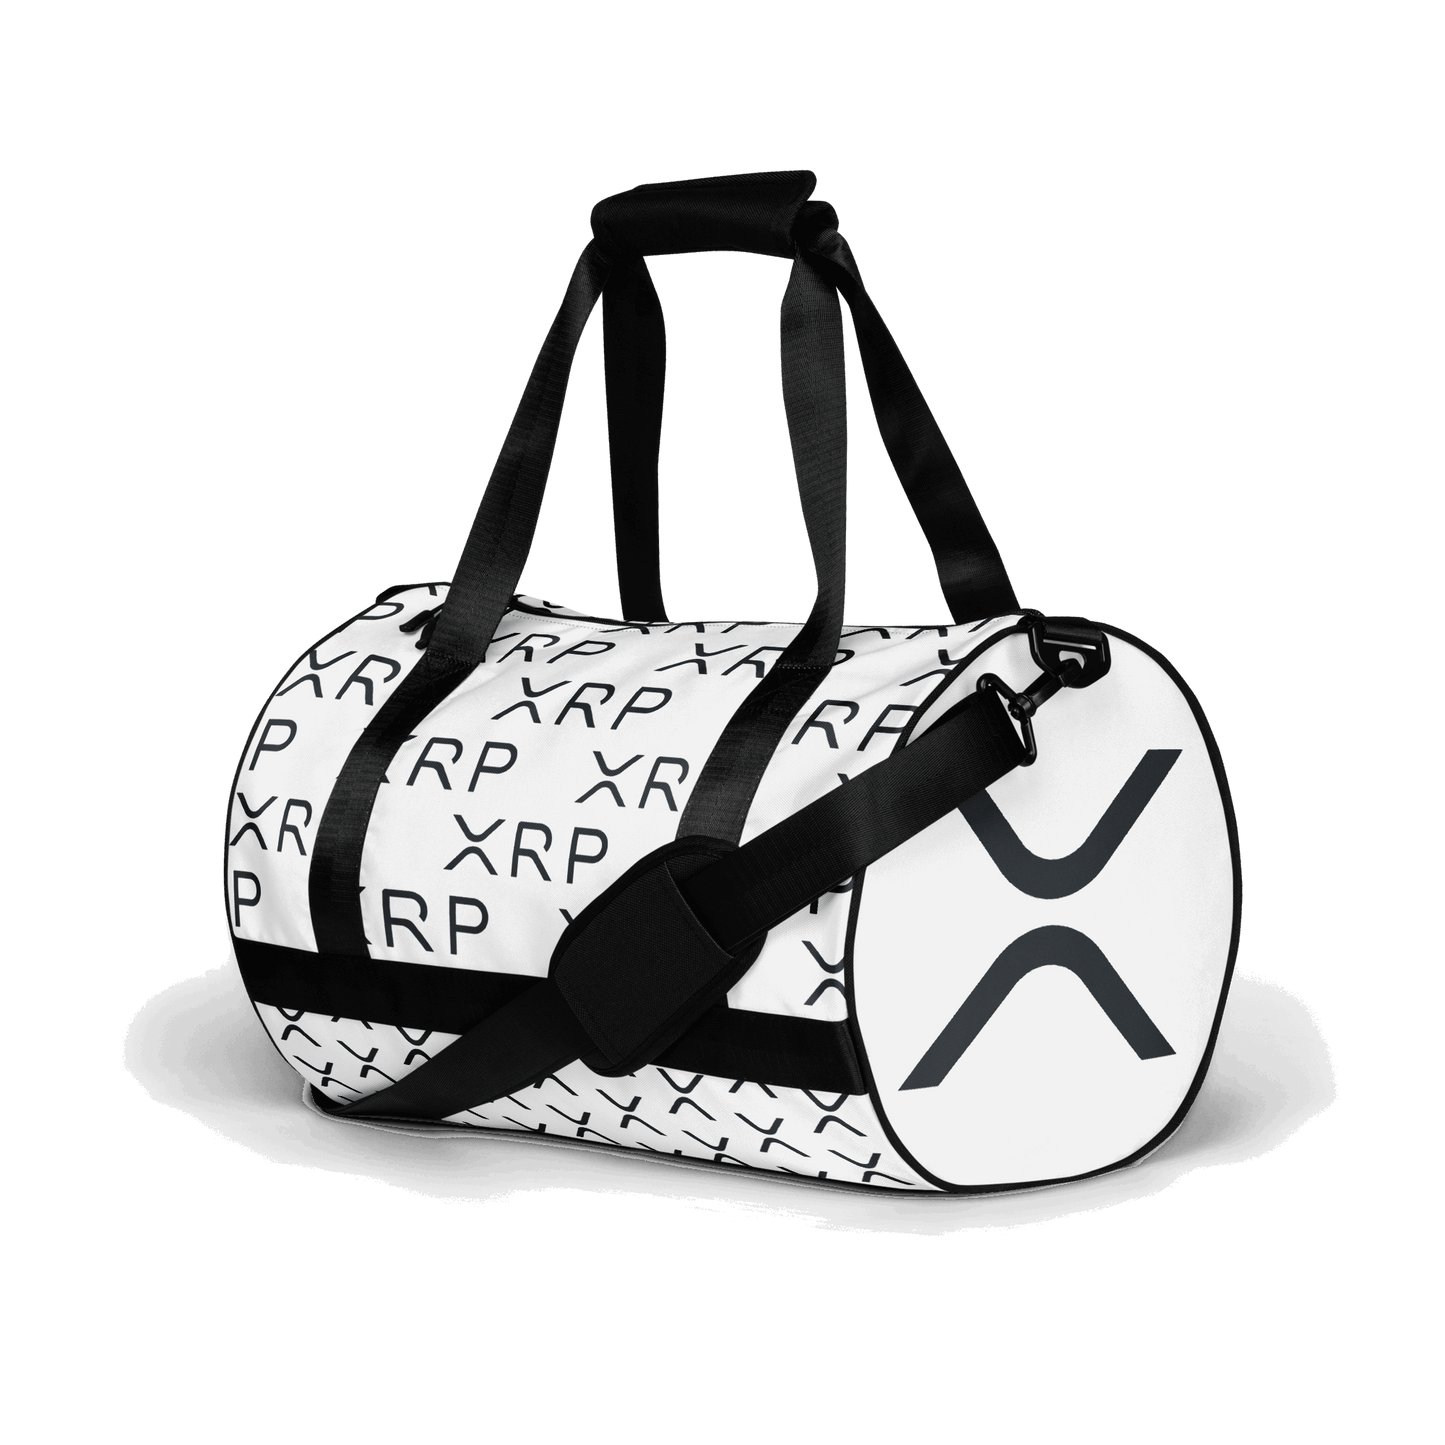 XRP - All-over print gym bag